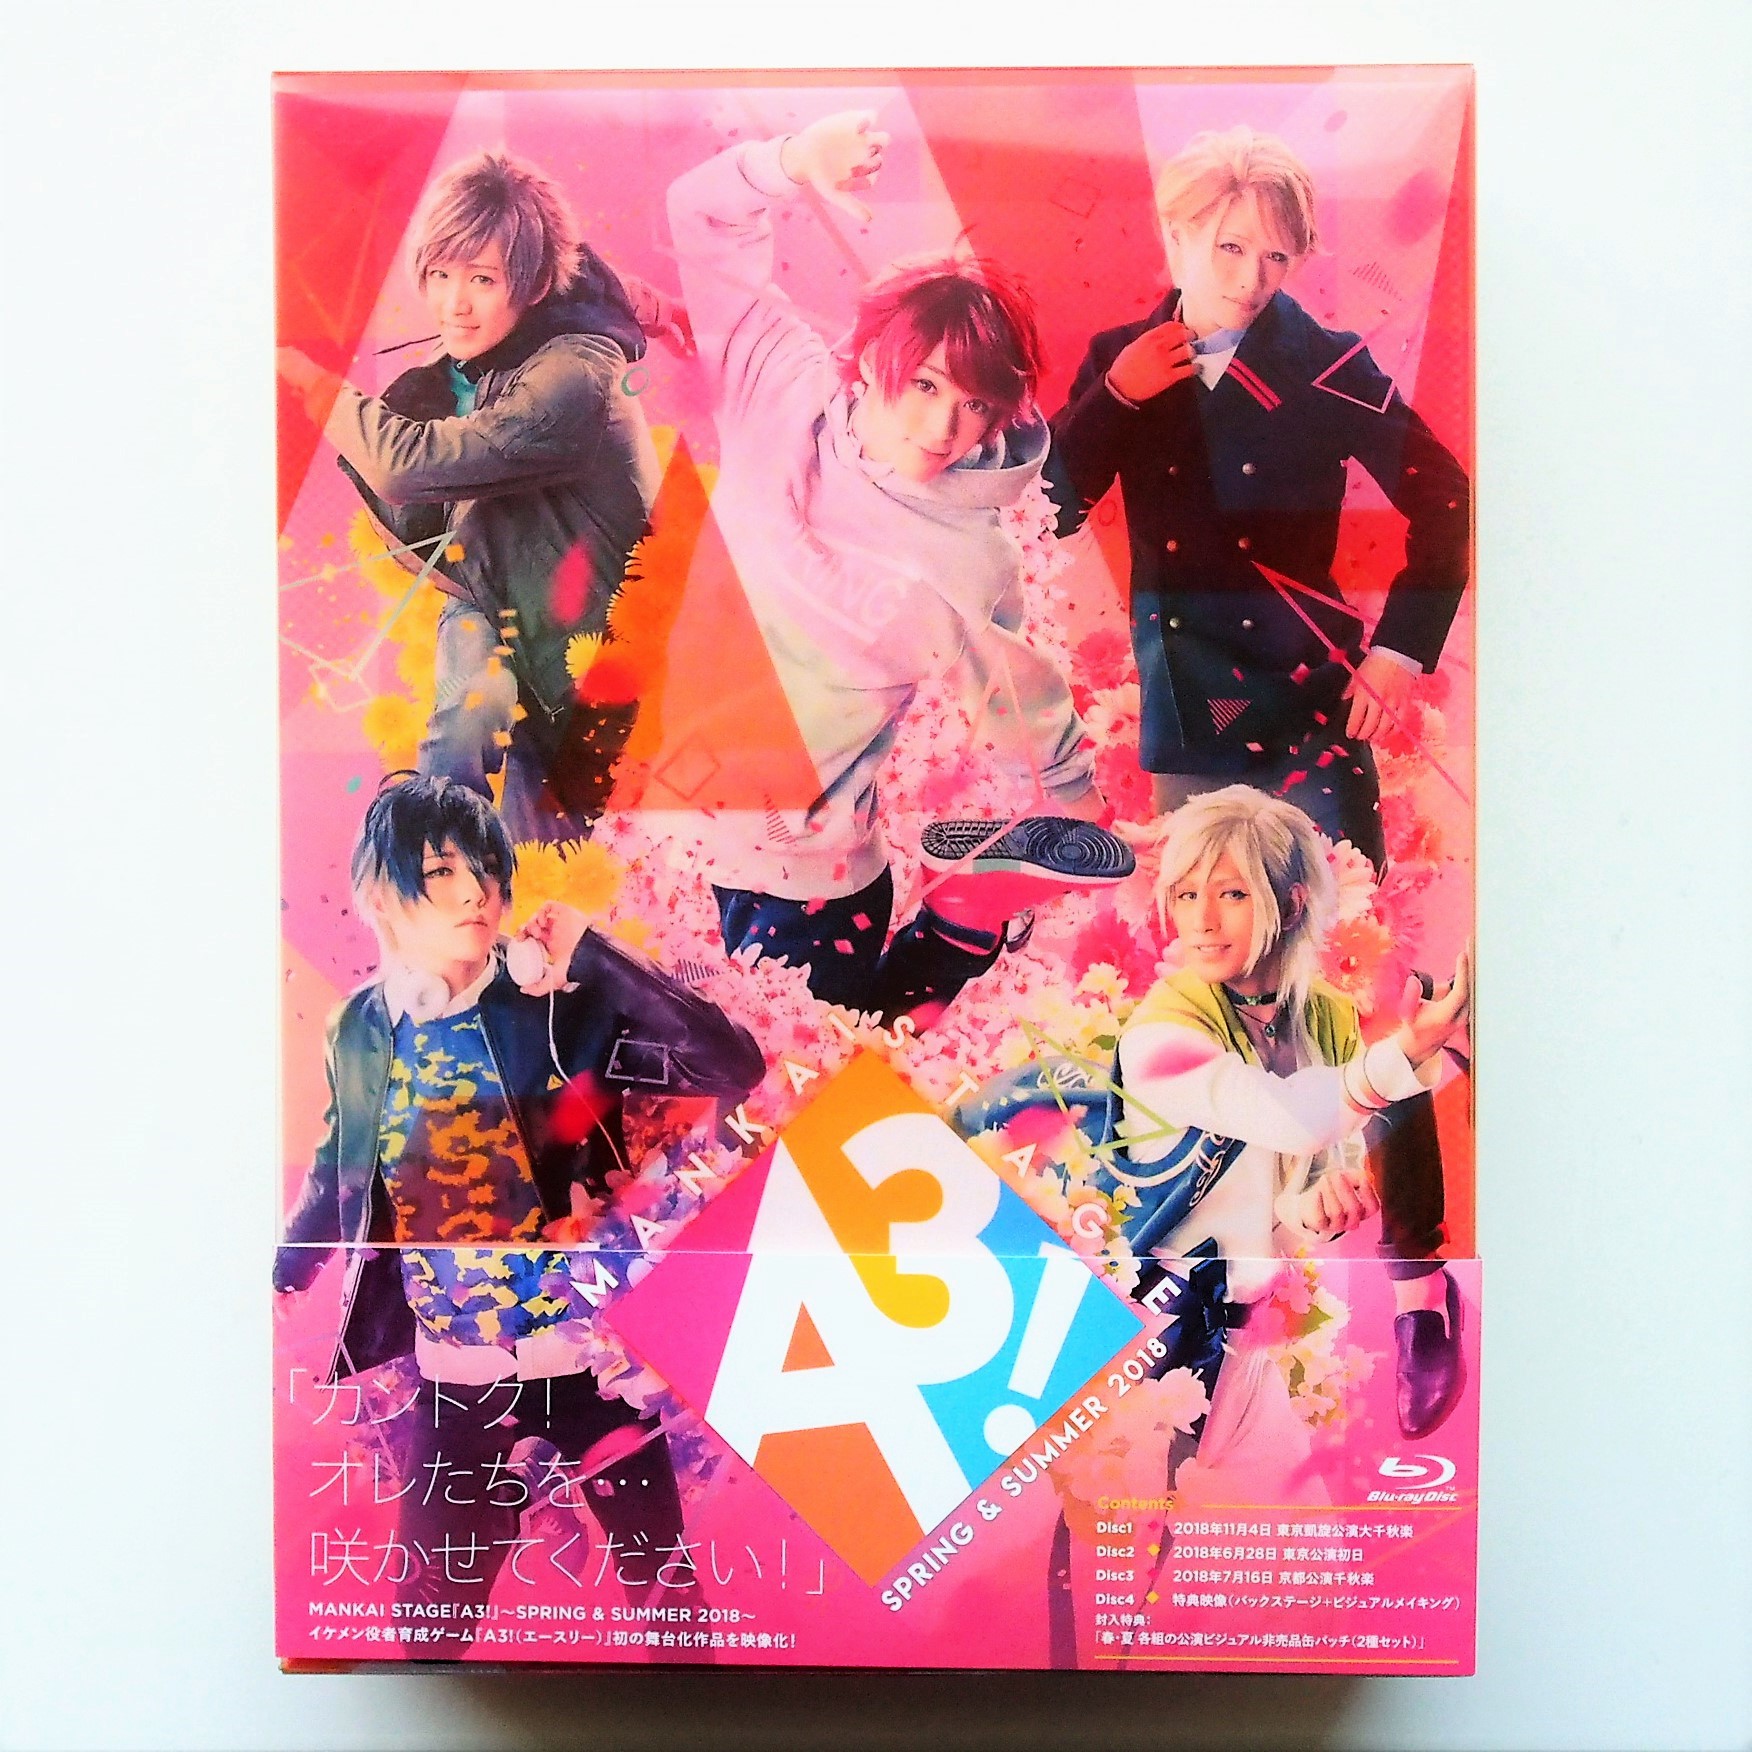 A3! エーステ 円盤 初演 2018 春組 夏組 初演特別限定盤 DVD